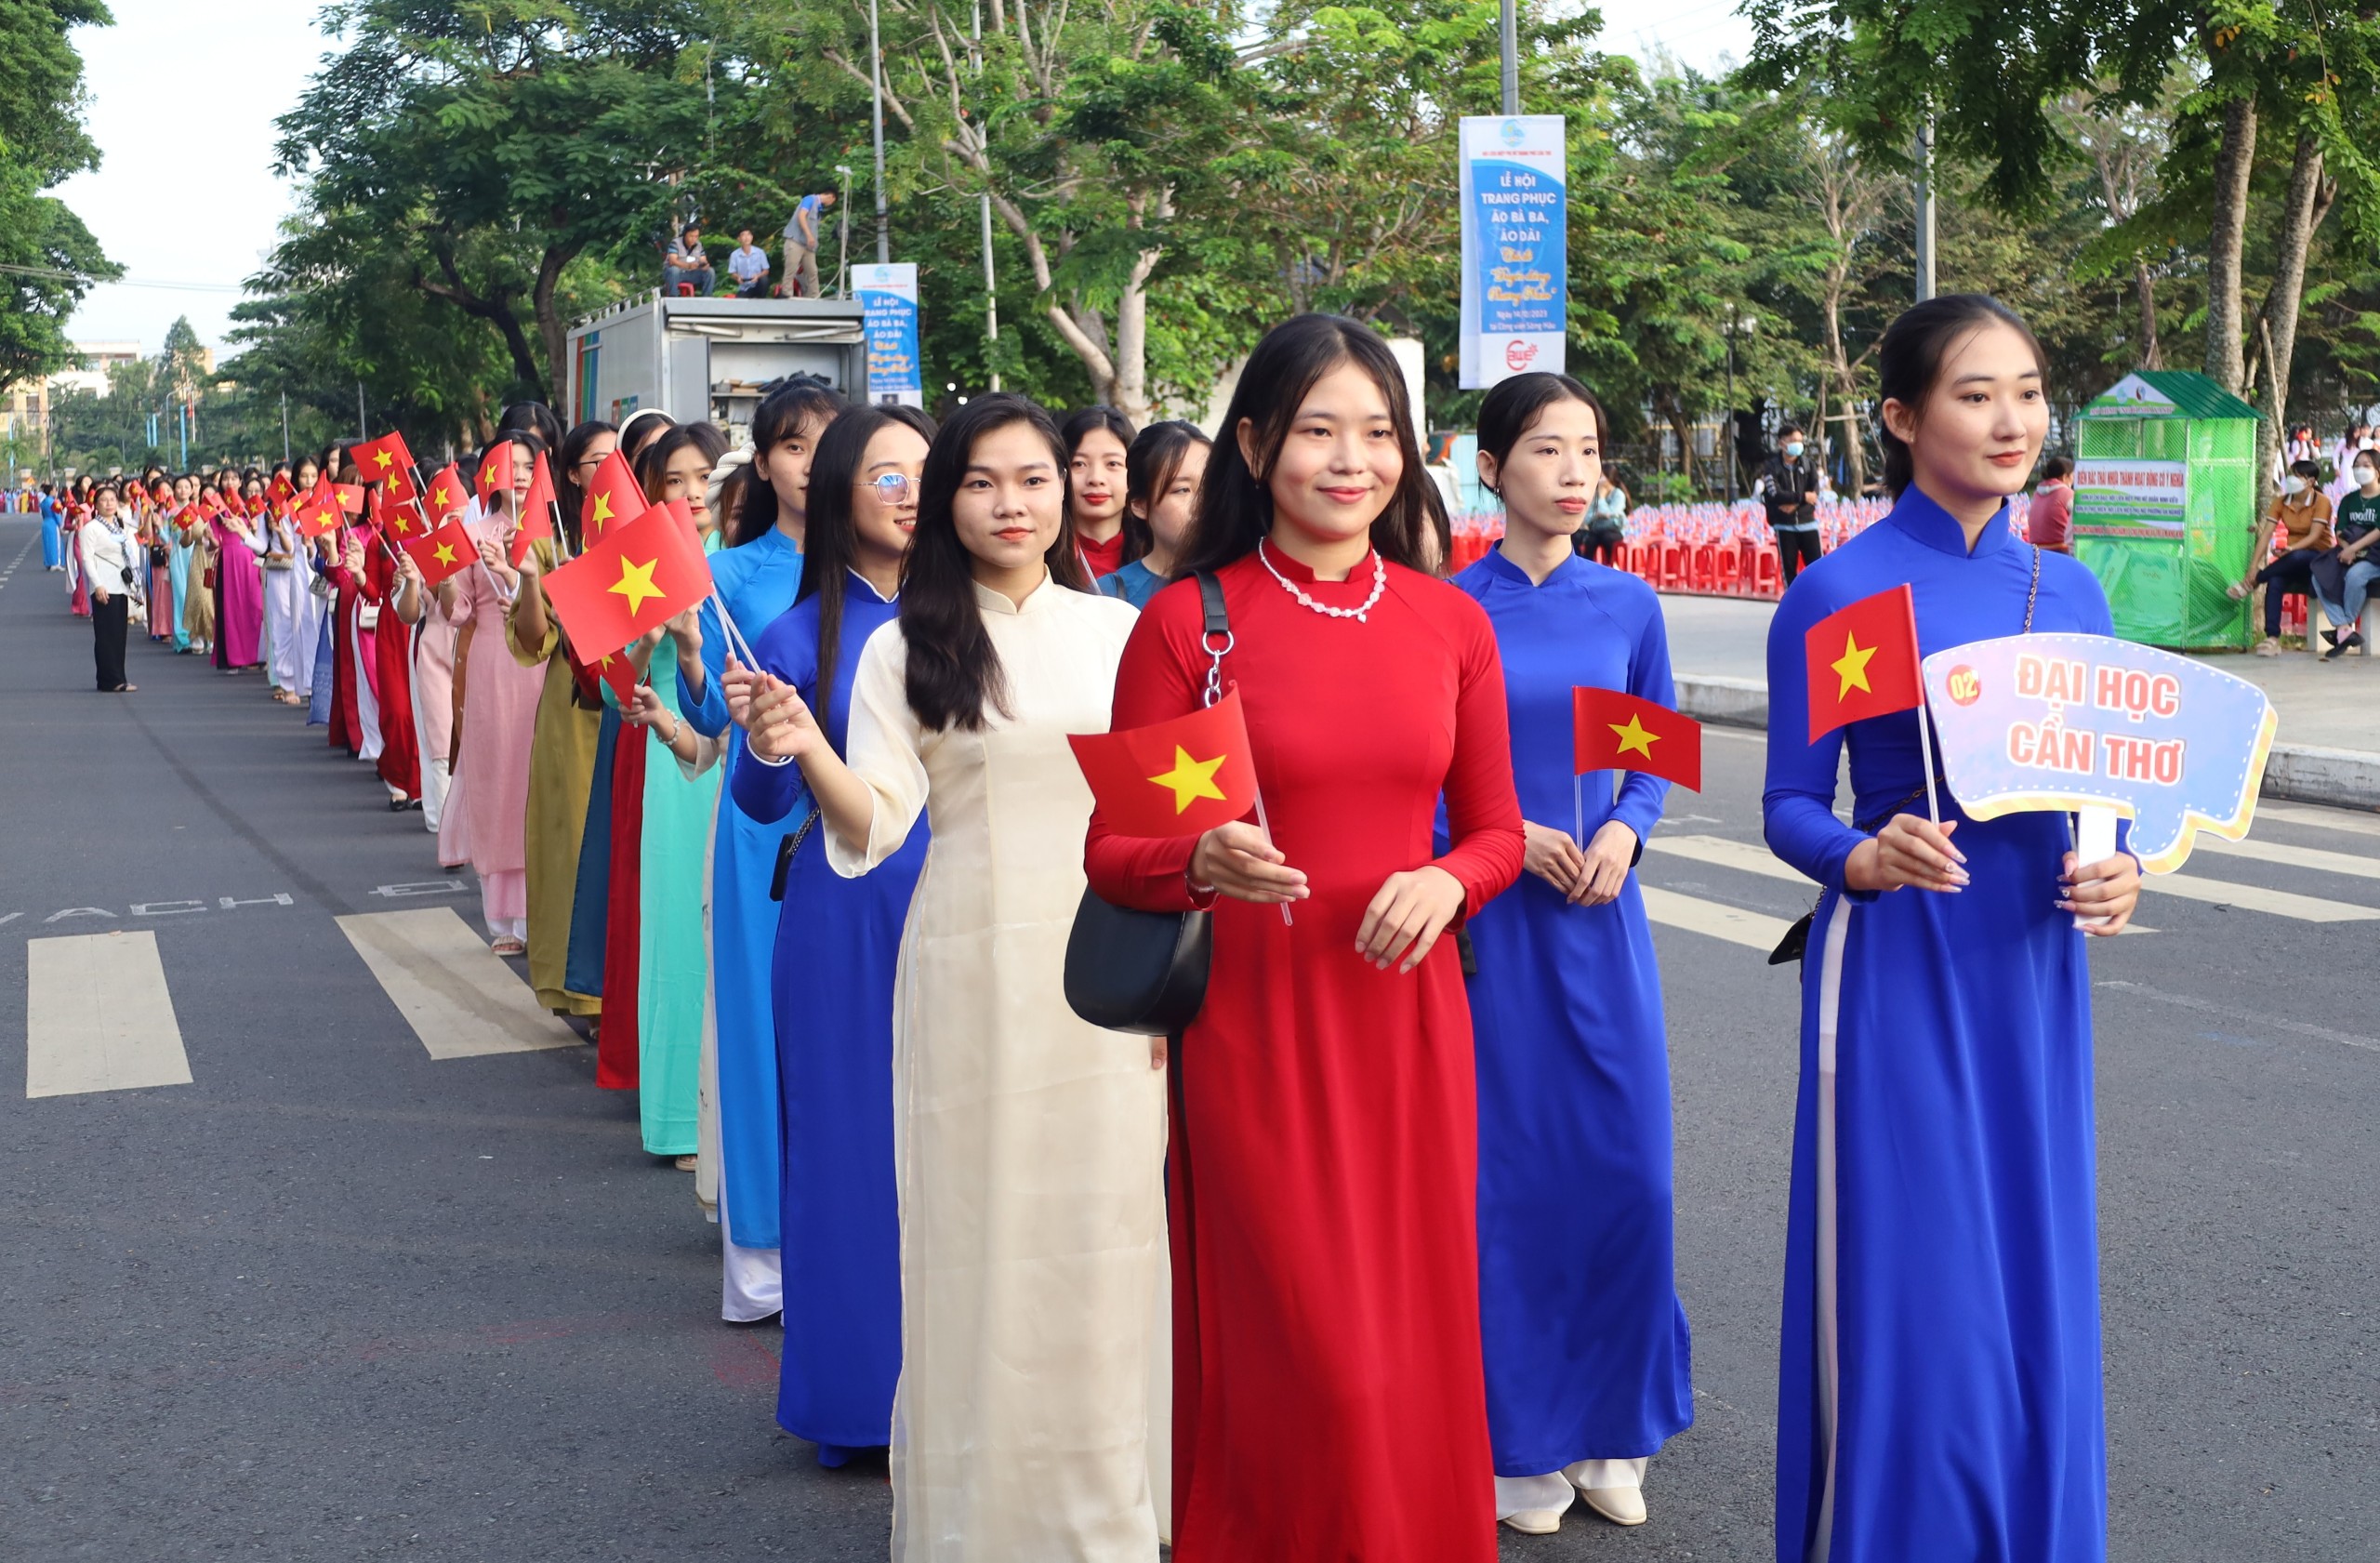 Những tà áo dài thướt tha bay trong gió lại được kết hợp với Cờ Nước và Cờ Hội, tạo nên bức tranh đa sắc màu về hình ảnh chiếc áo dài - một biểu tượng trong văn hóa của dân tộc Việt Nam.